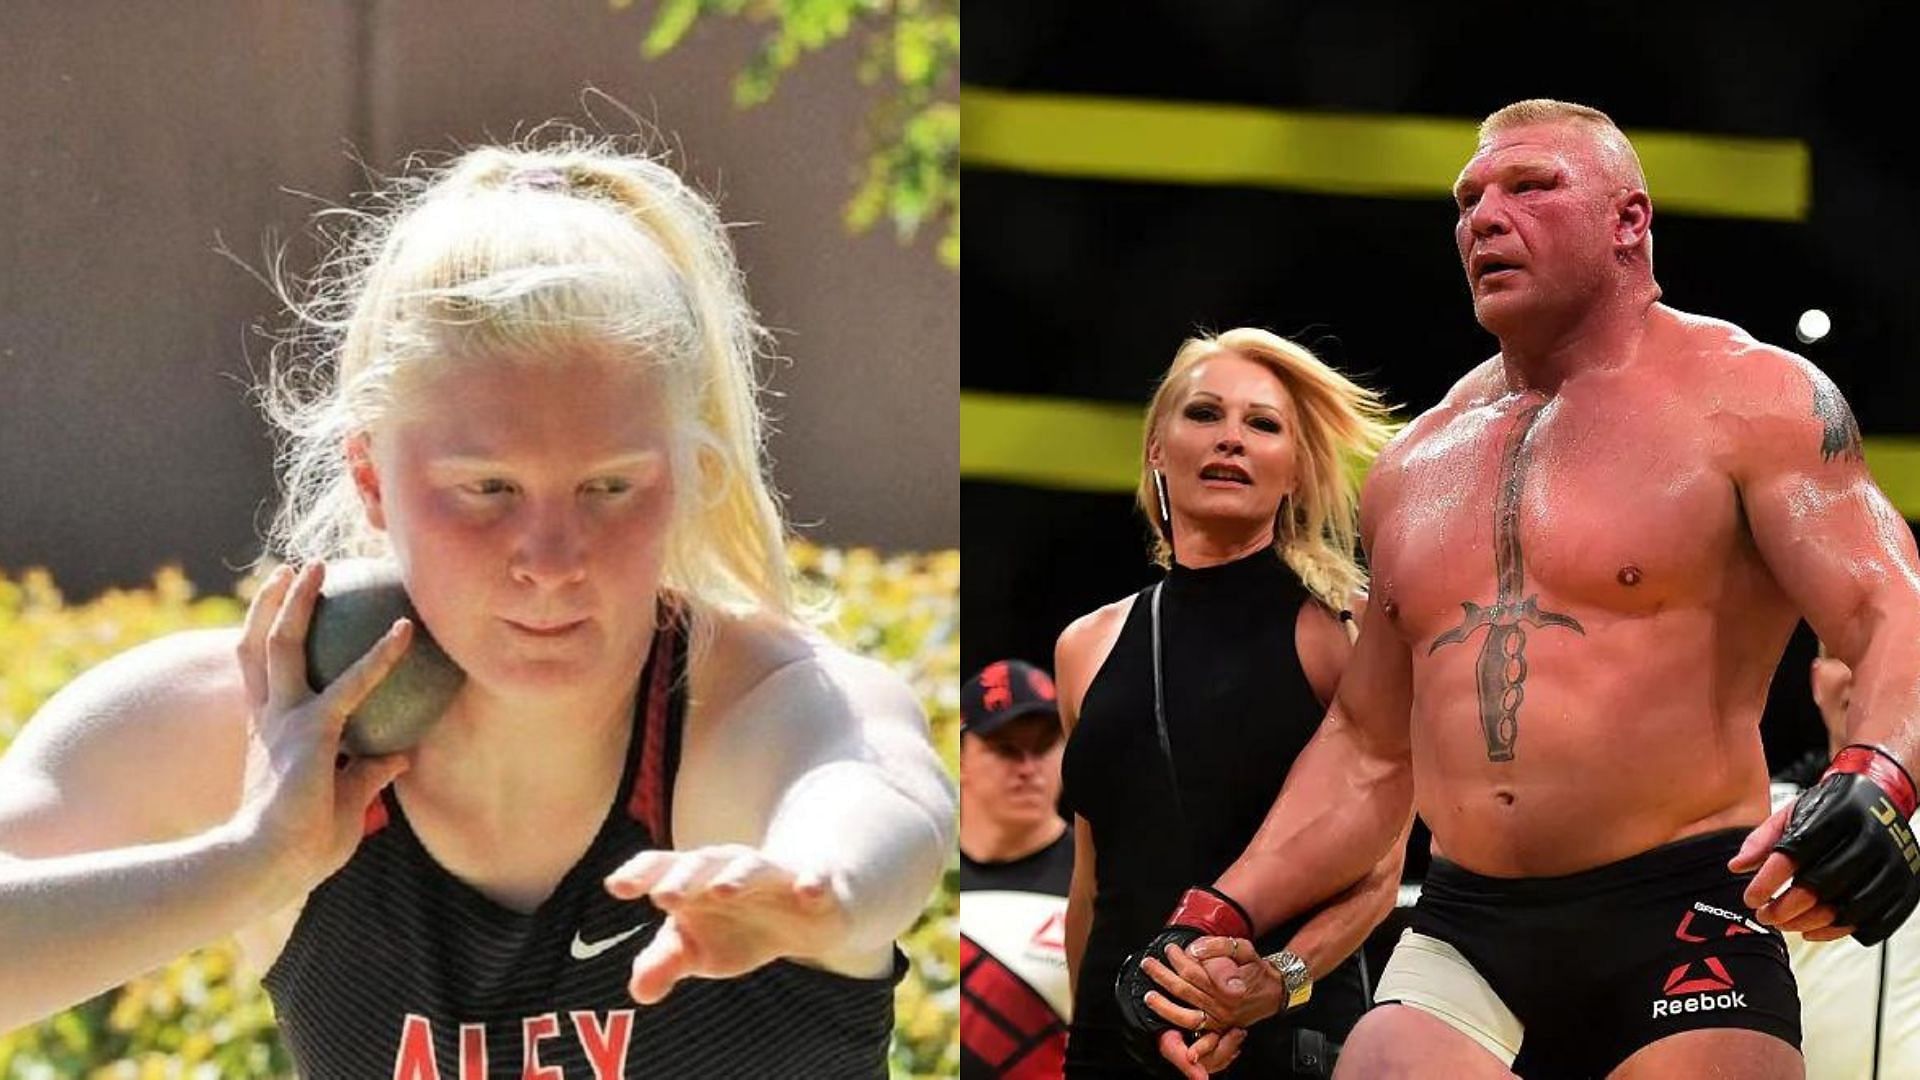 WWE stars Brock Lesnar and Sable and daughter Mya Lynn Lesnar